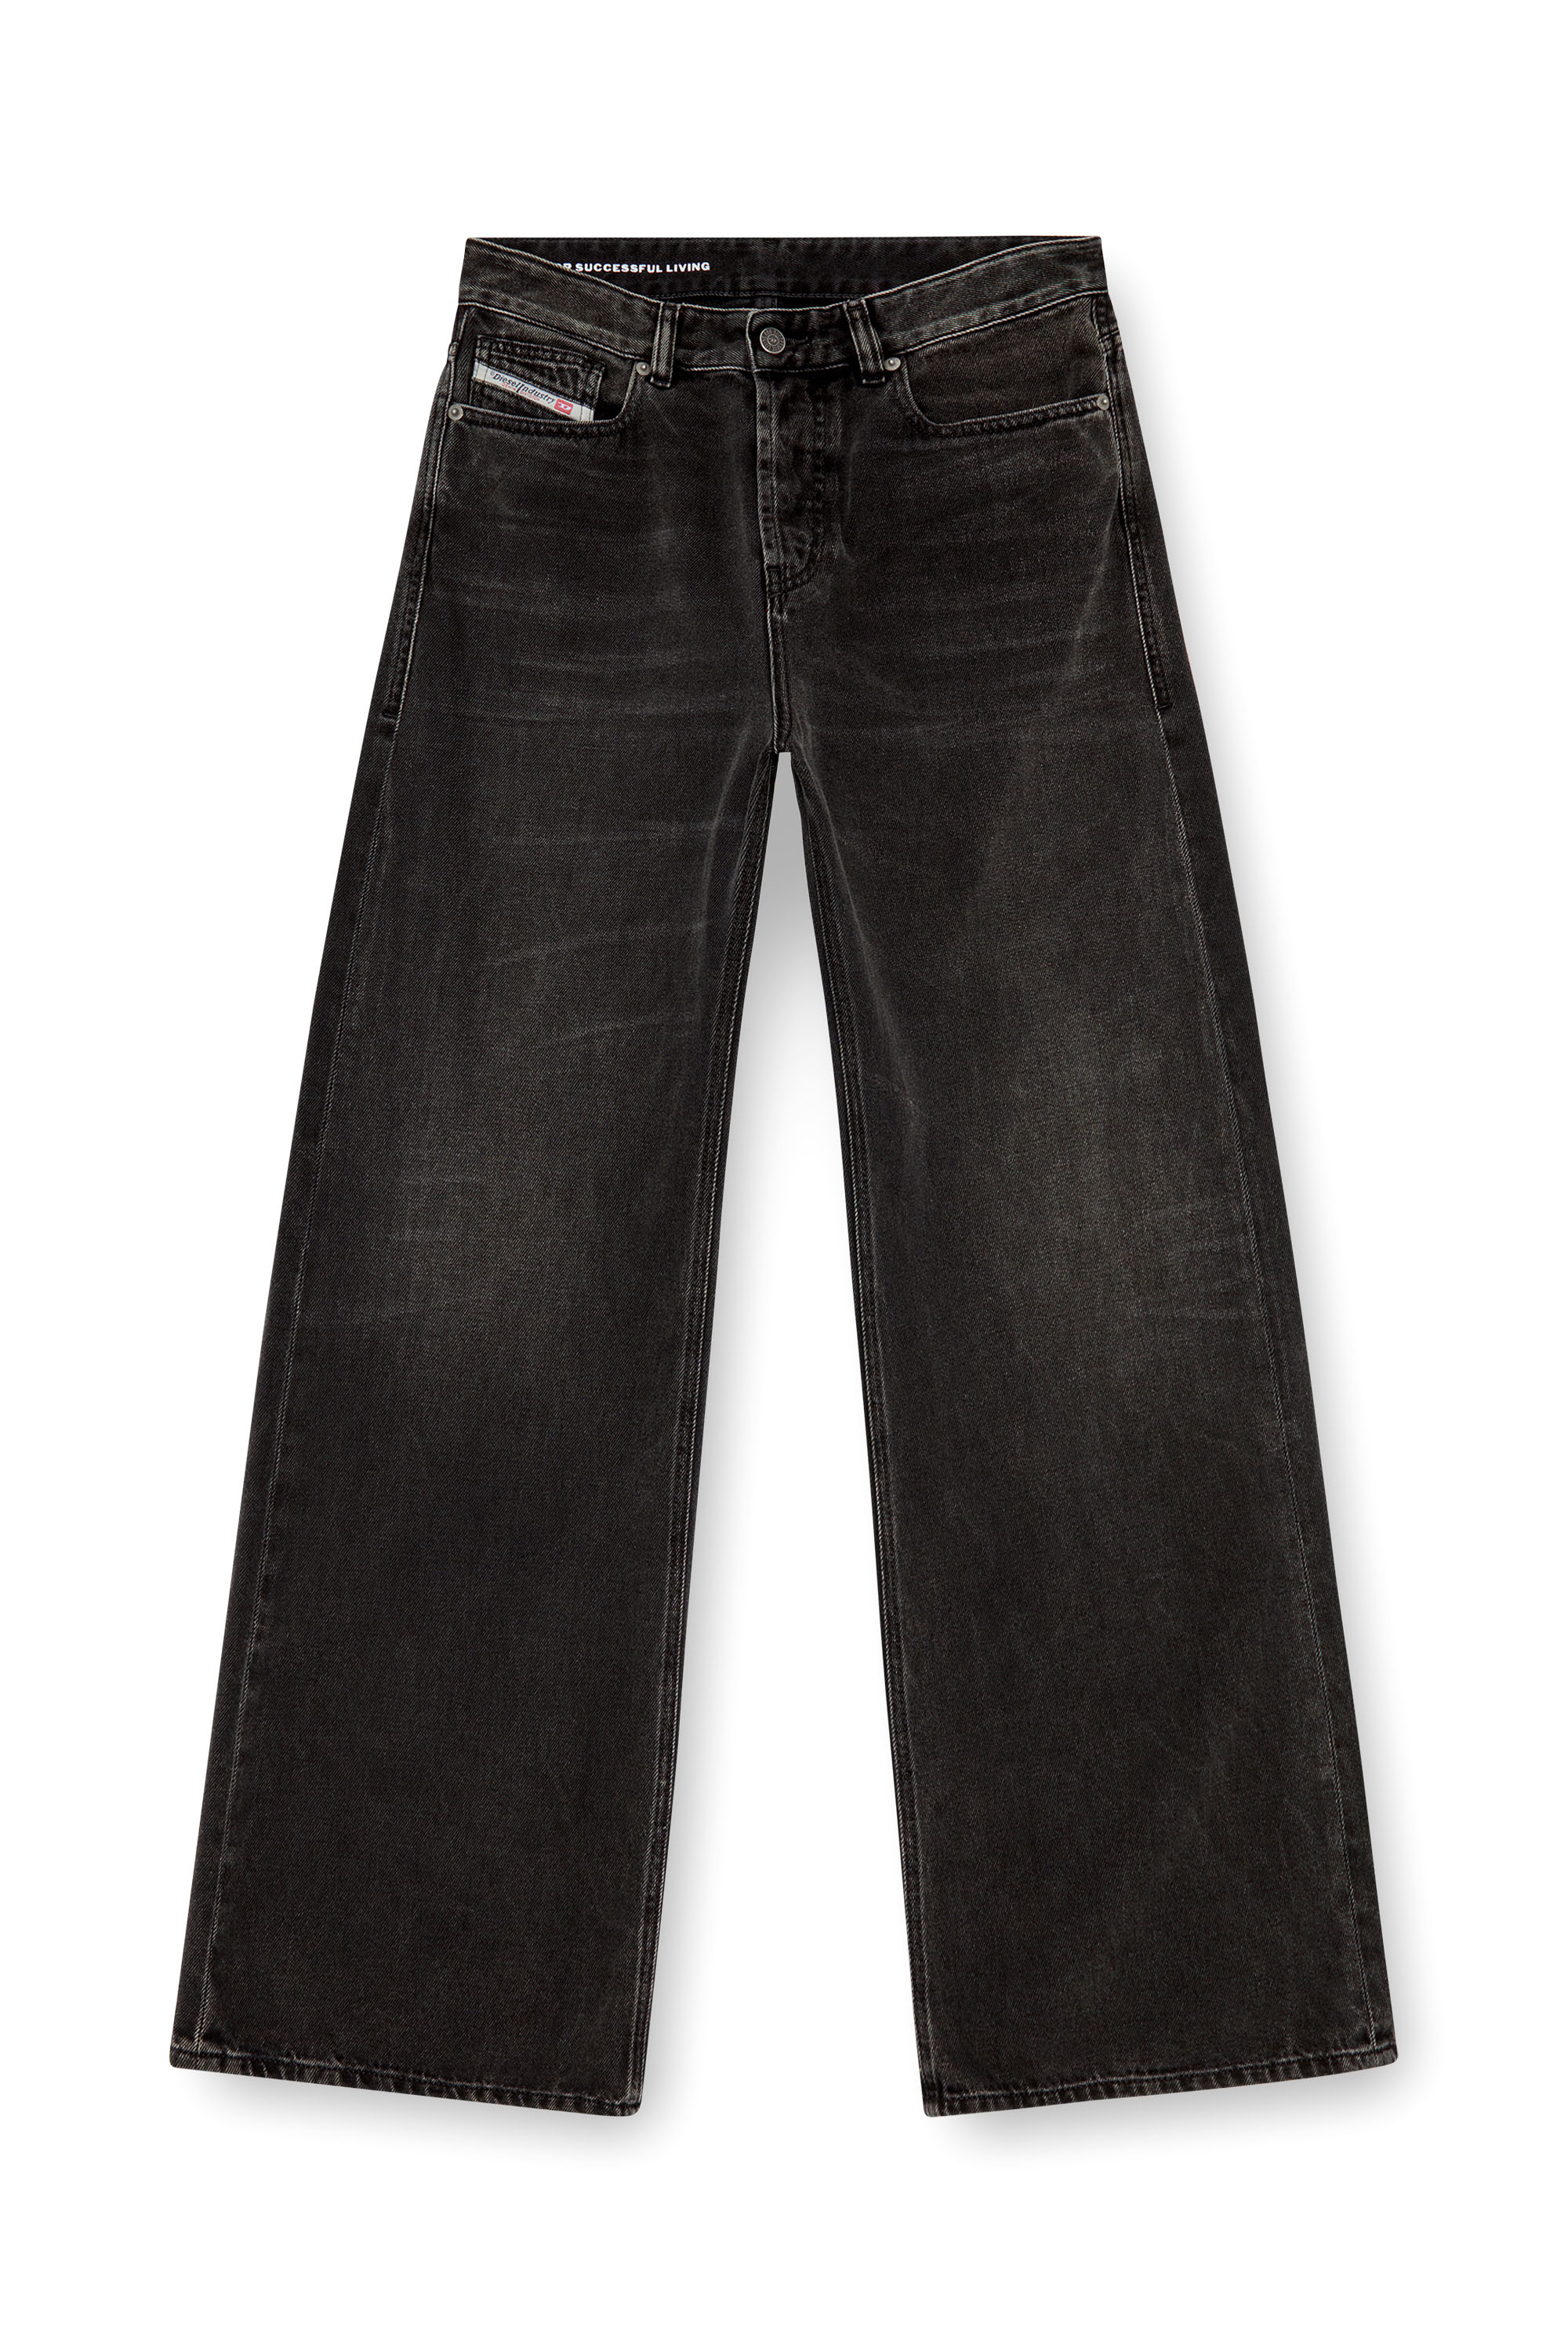 Diesel - Woman Straight Jeans 1996 D-Sire 09J96, Black/Dark grey - Image 3